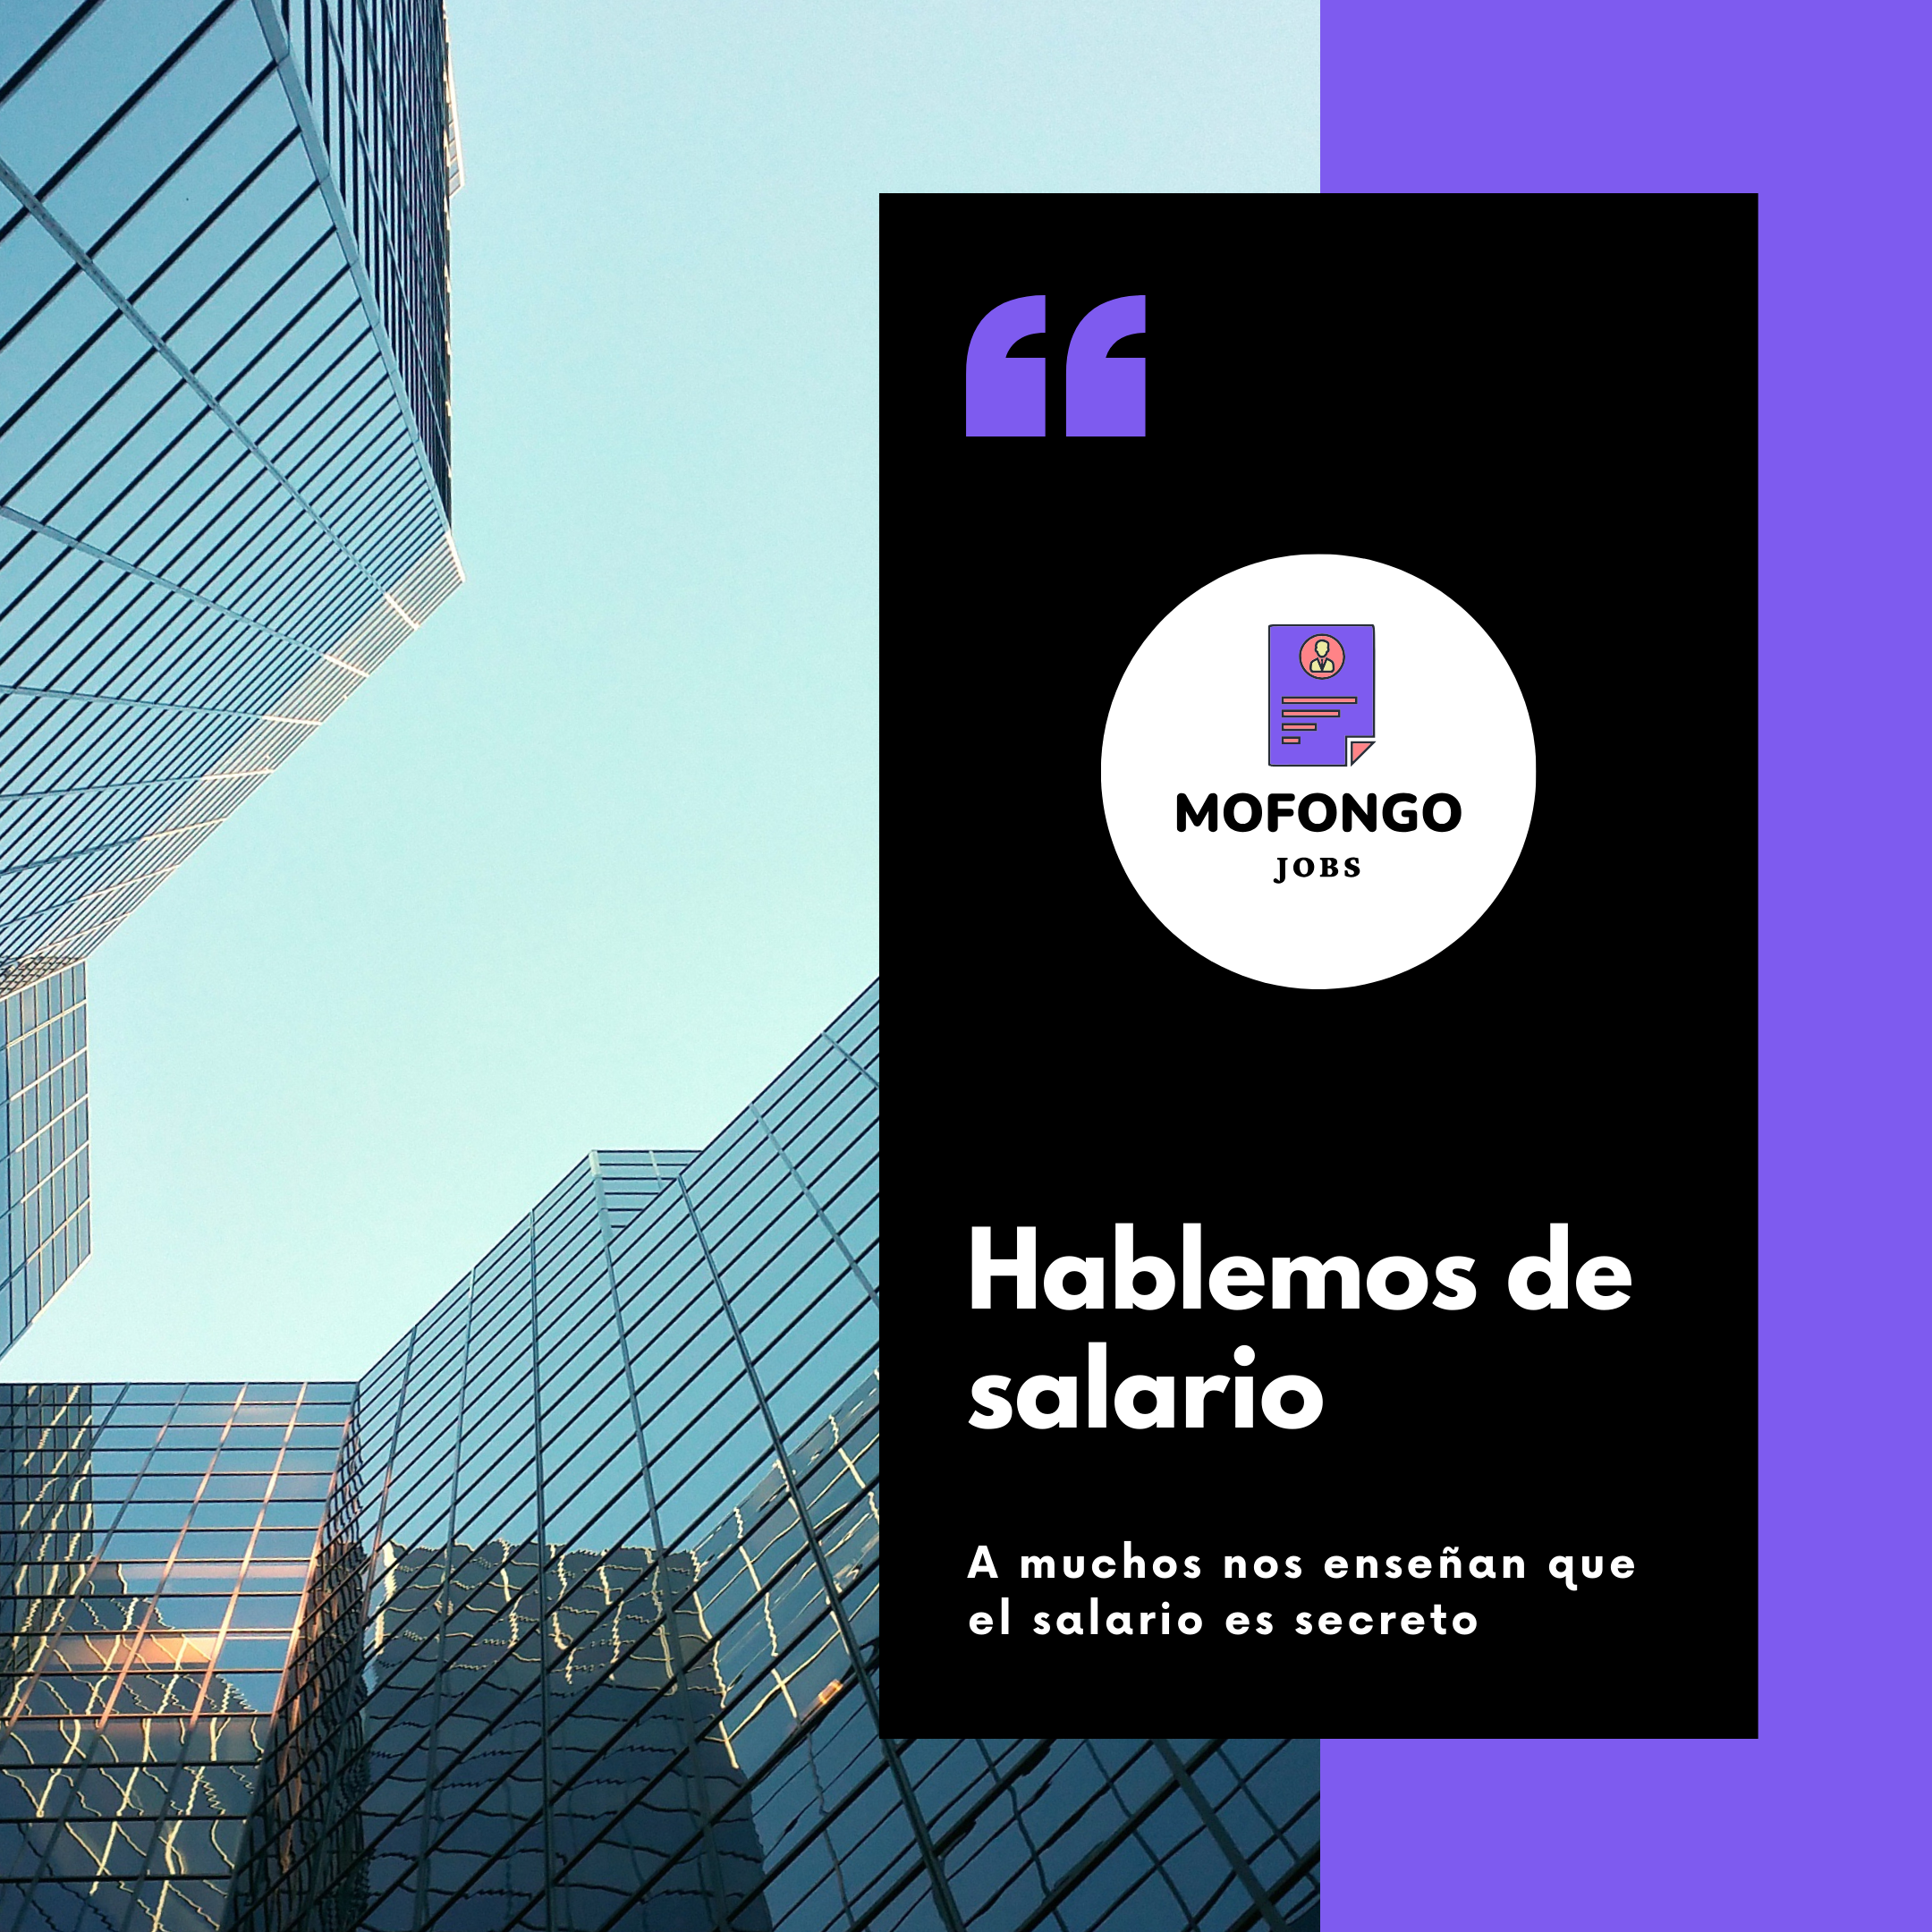 Imagen promocional de Mofongo Jobs con el tema "Hablemos de salario". Muestra rascacielos con cielo azul y un diseño dividido en negro y morado con el logo de Mofongo Jobs, resaltando el mensaje sobre la privacidad del salario.